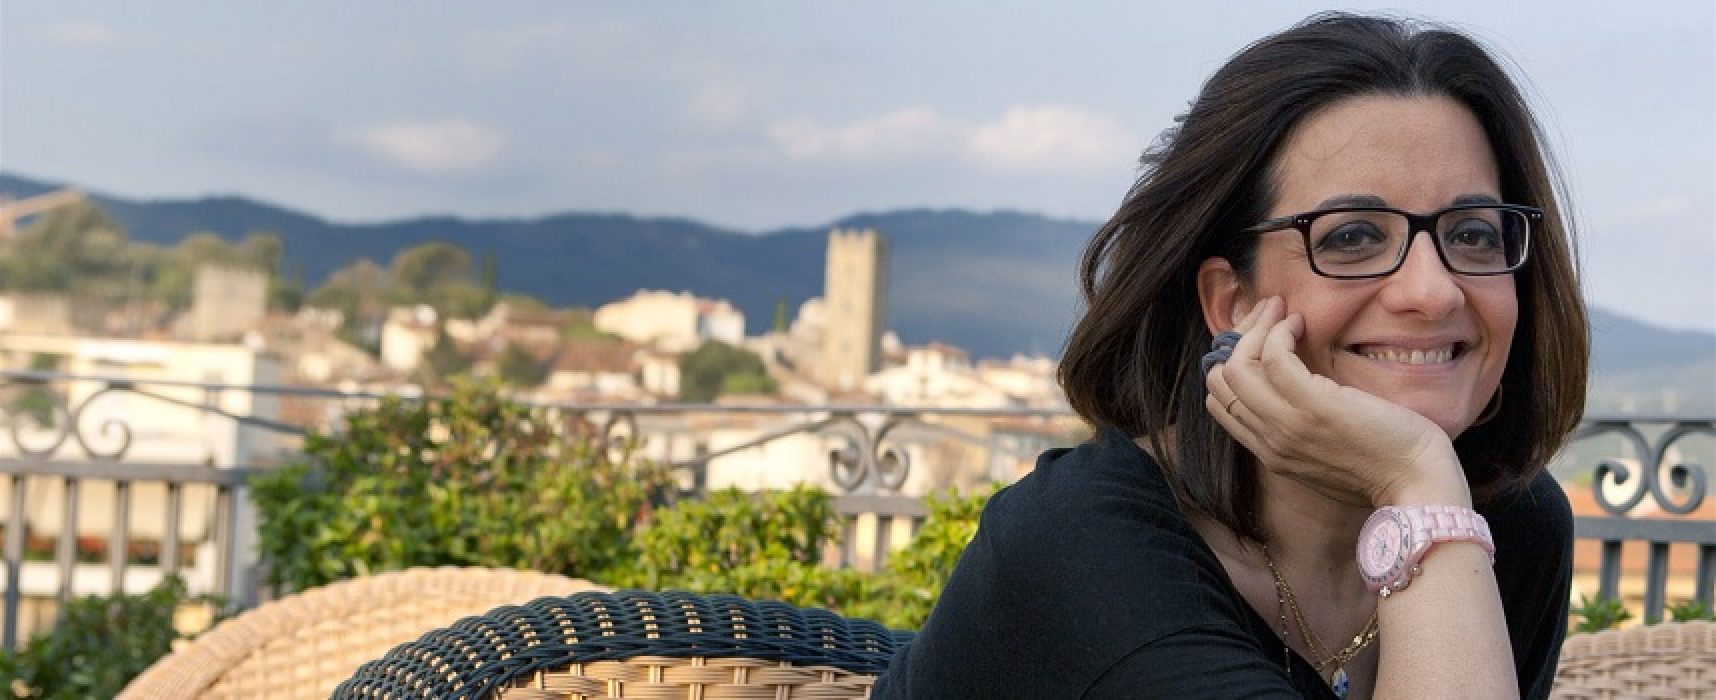 “Cinque donne e un arancino”, Catena Fiorello a Bisceglie per presentare il suo nuovo romanzo